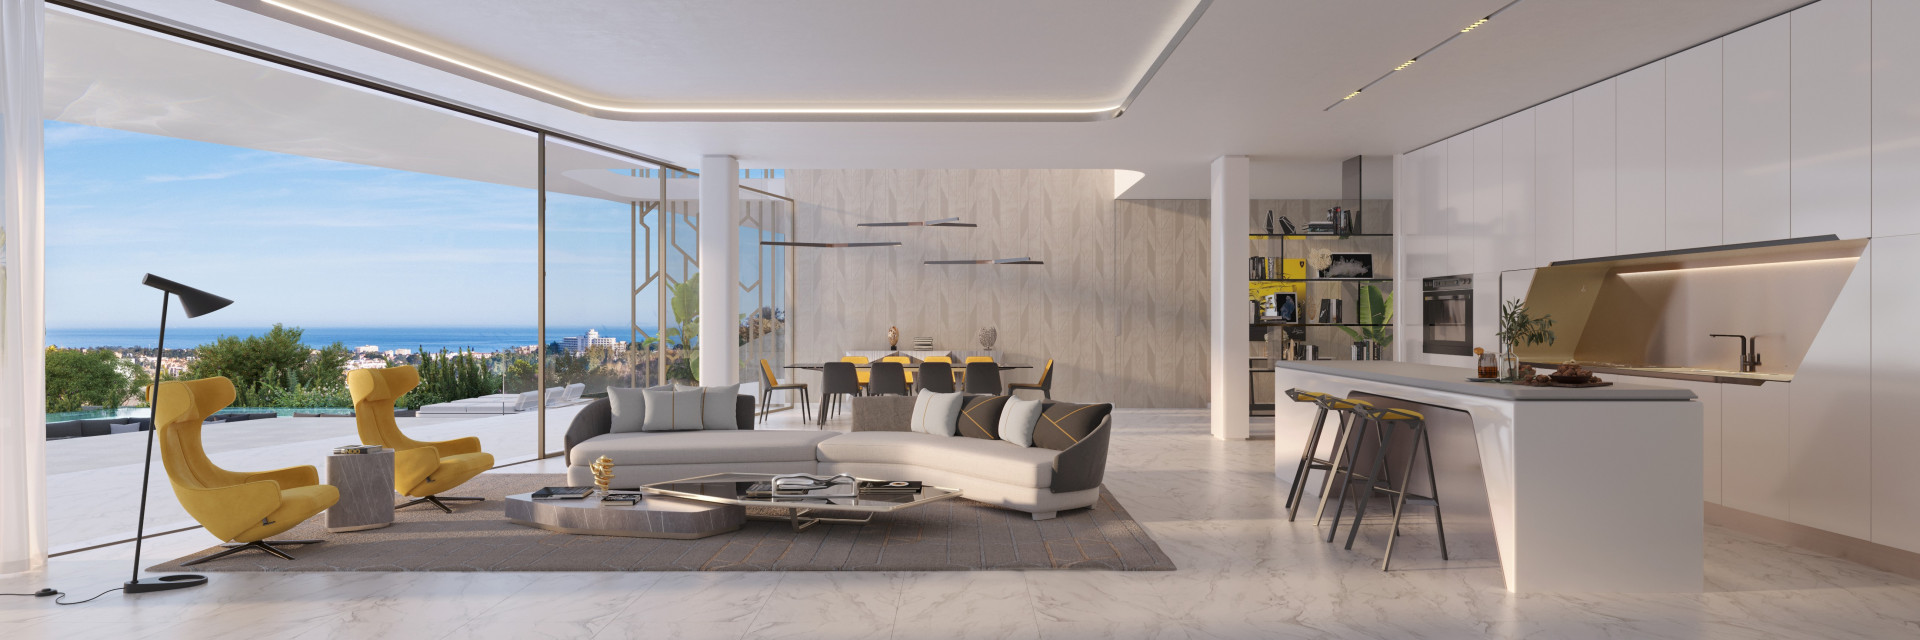 Exclusiva promoción residencial en Benahavís personalizadas con un diseño moderno influenciado por Automobili Lamborghini